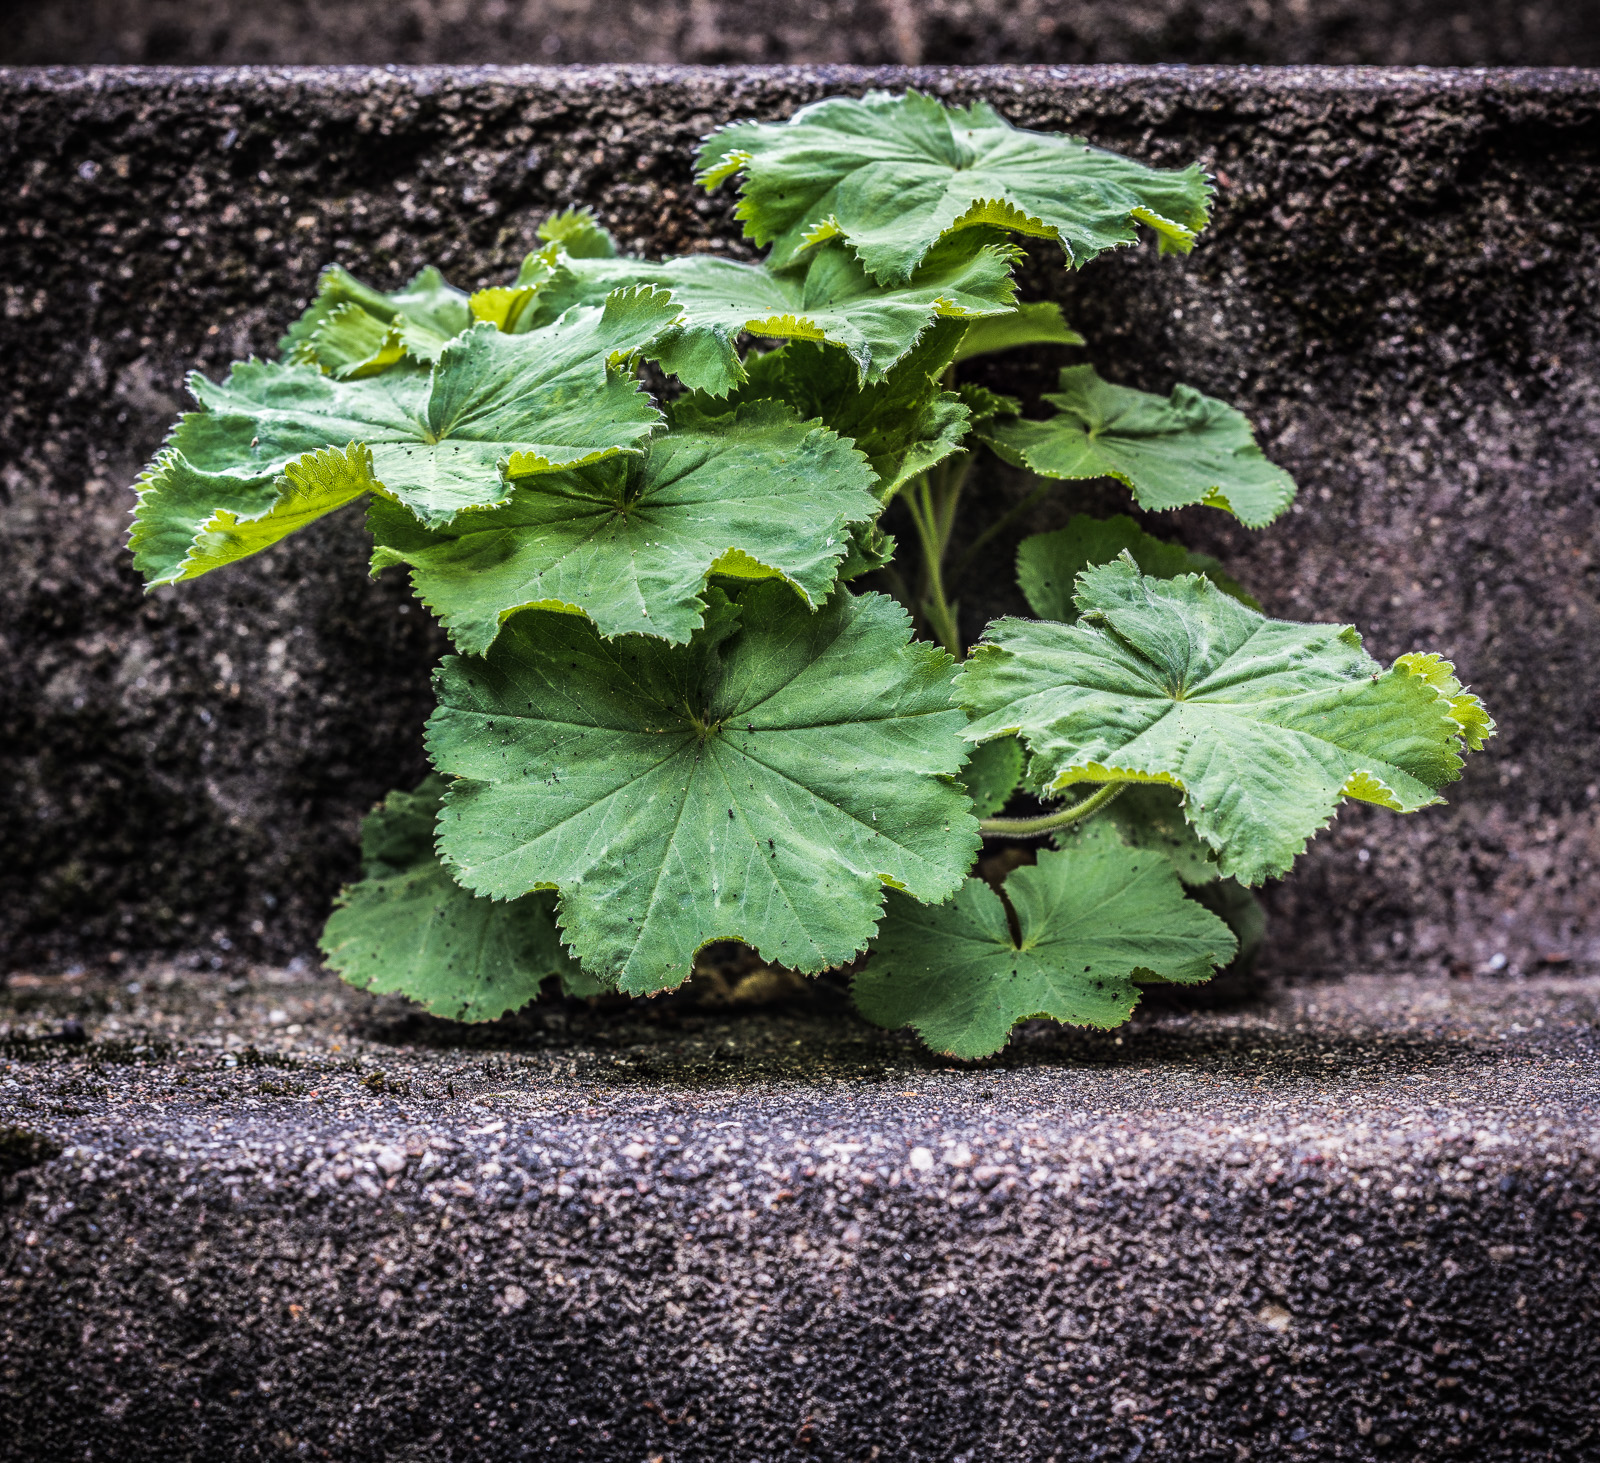 Aus einer Fuge einer Kellertreppe wuchert eine Pflanze mit große grünen Blättern